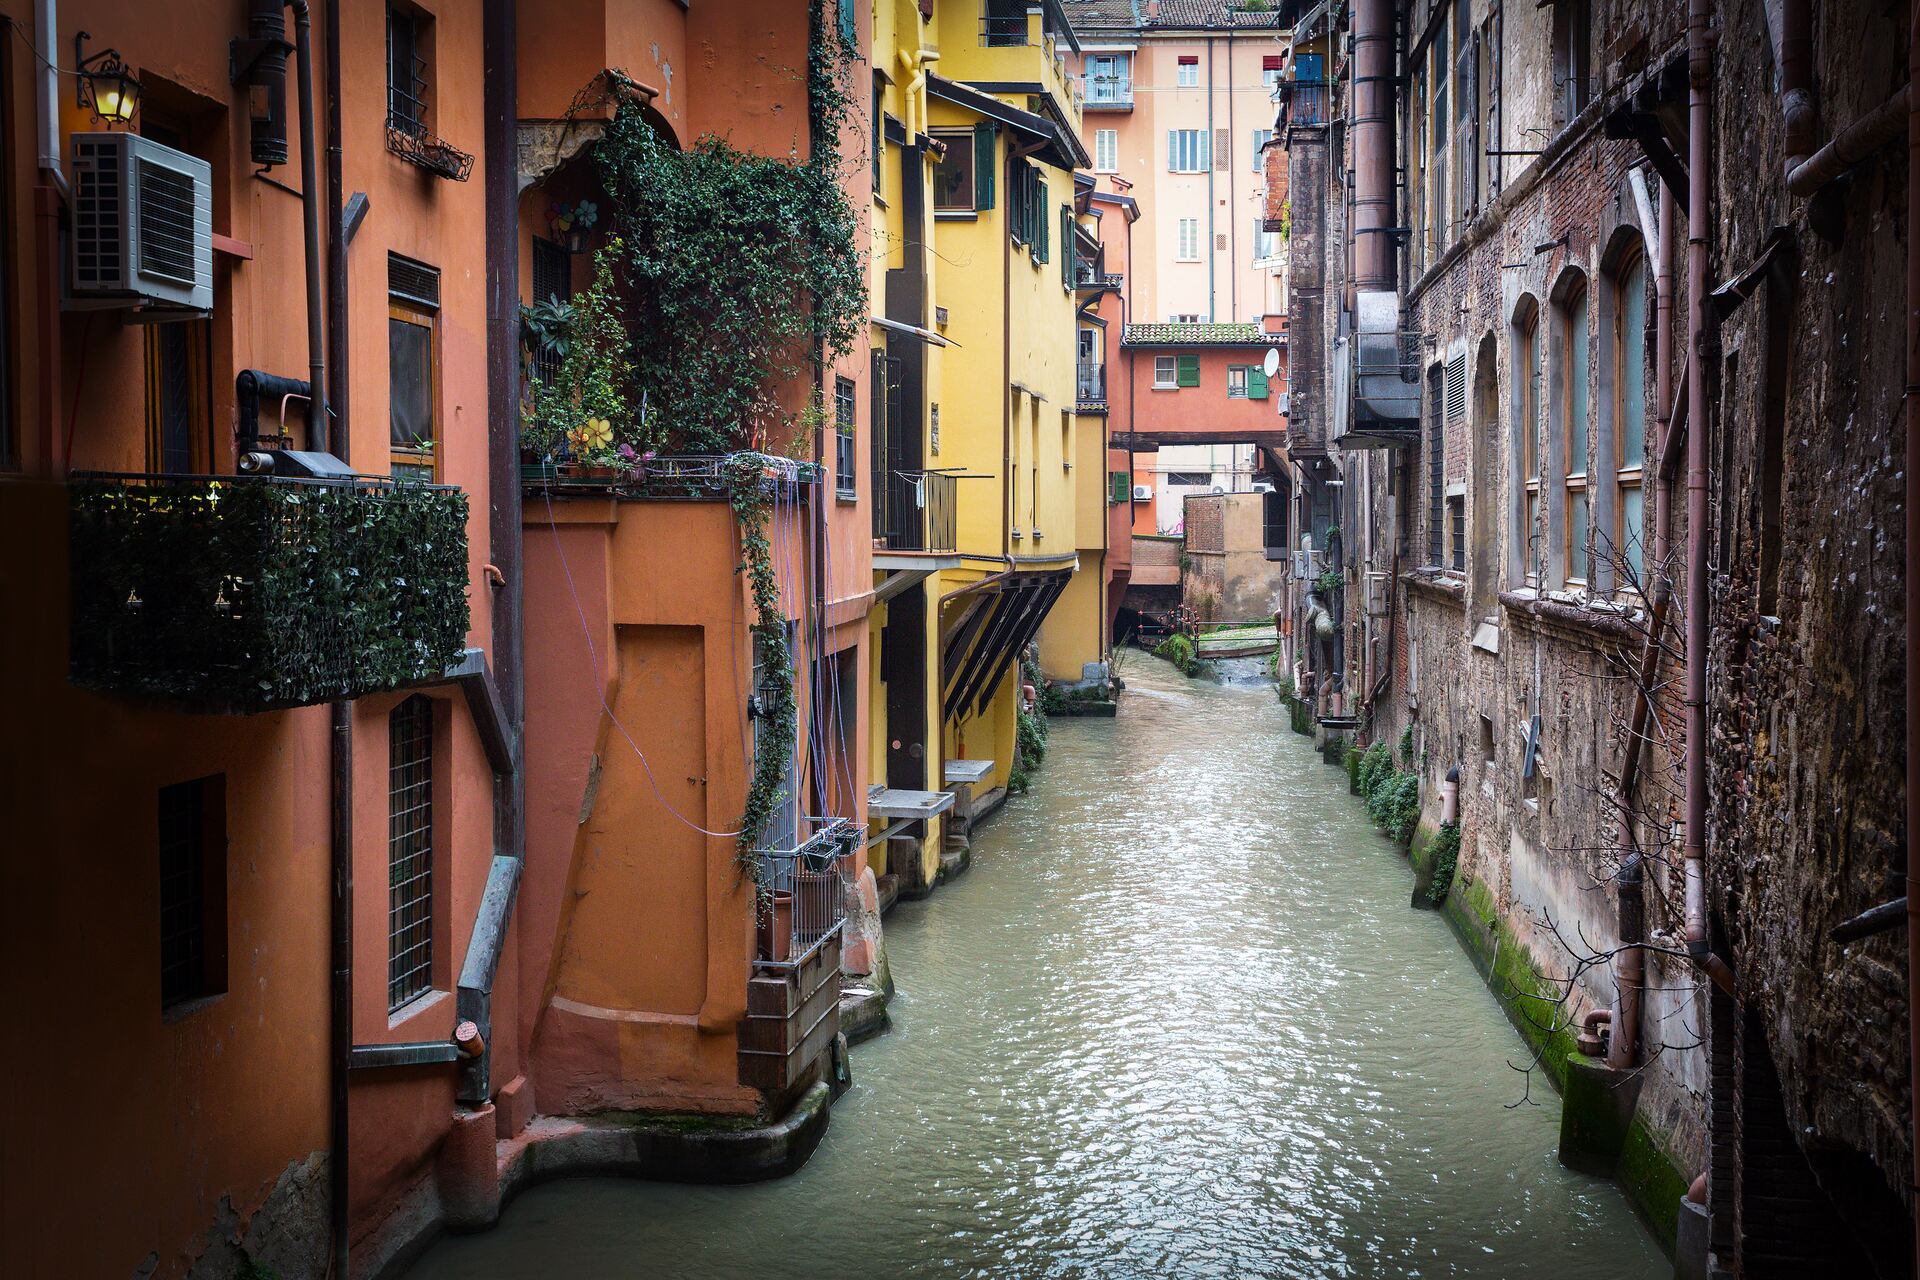 Дождь: маленькое окошко на Виа Пьелла, выходящее на Канале делле Молине, является одним из самых характерных «водных мест» в центре Болоньи.